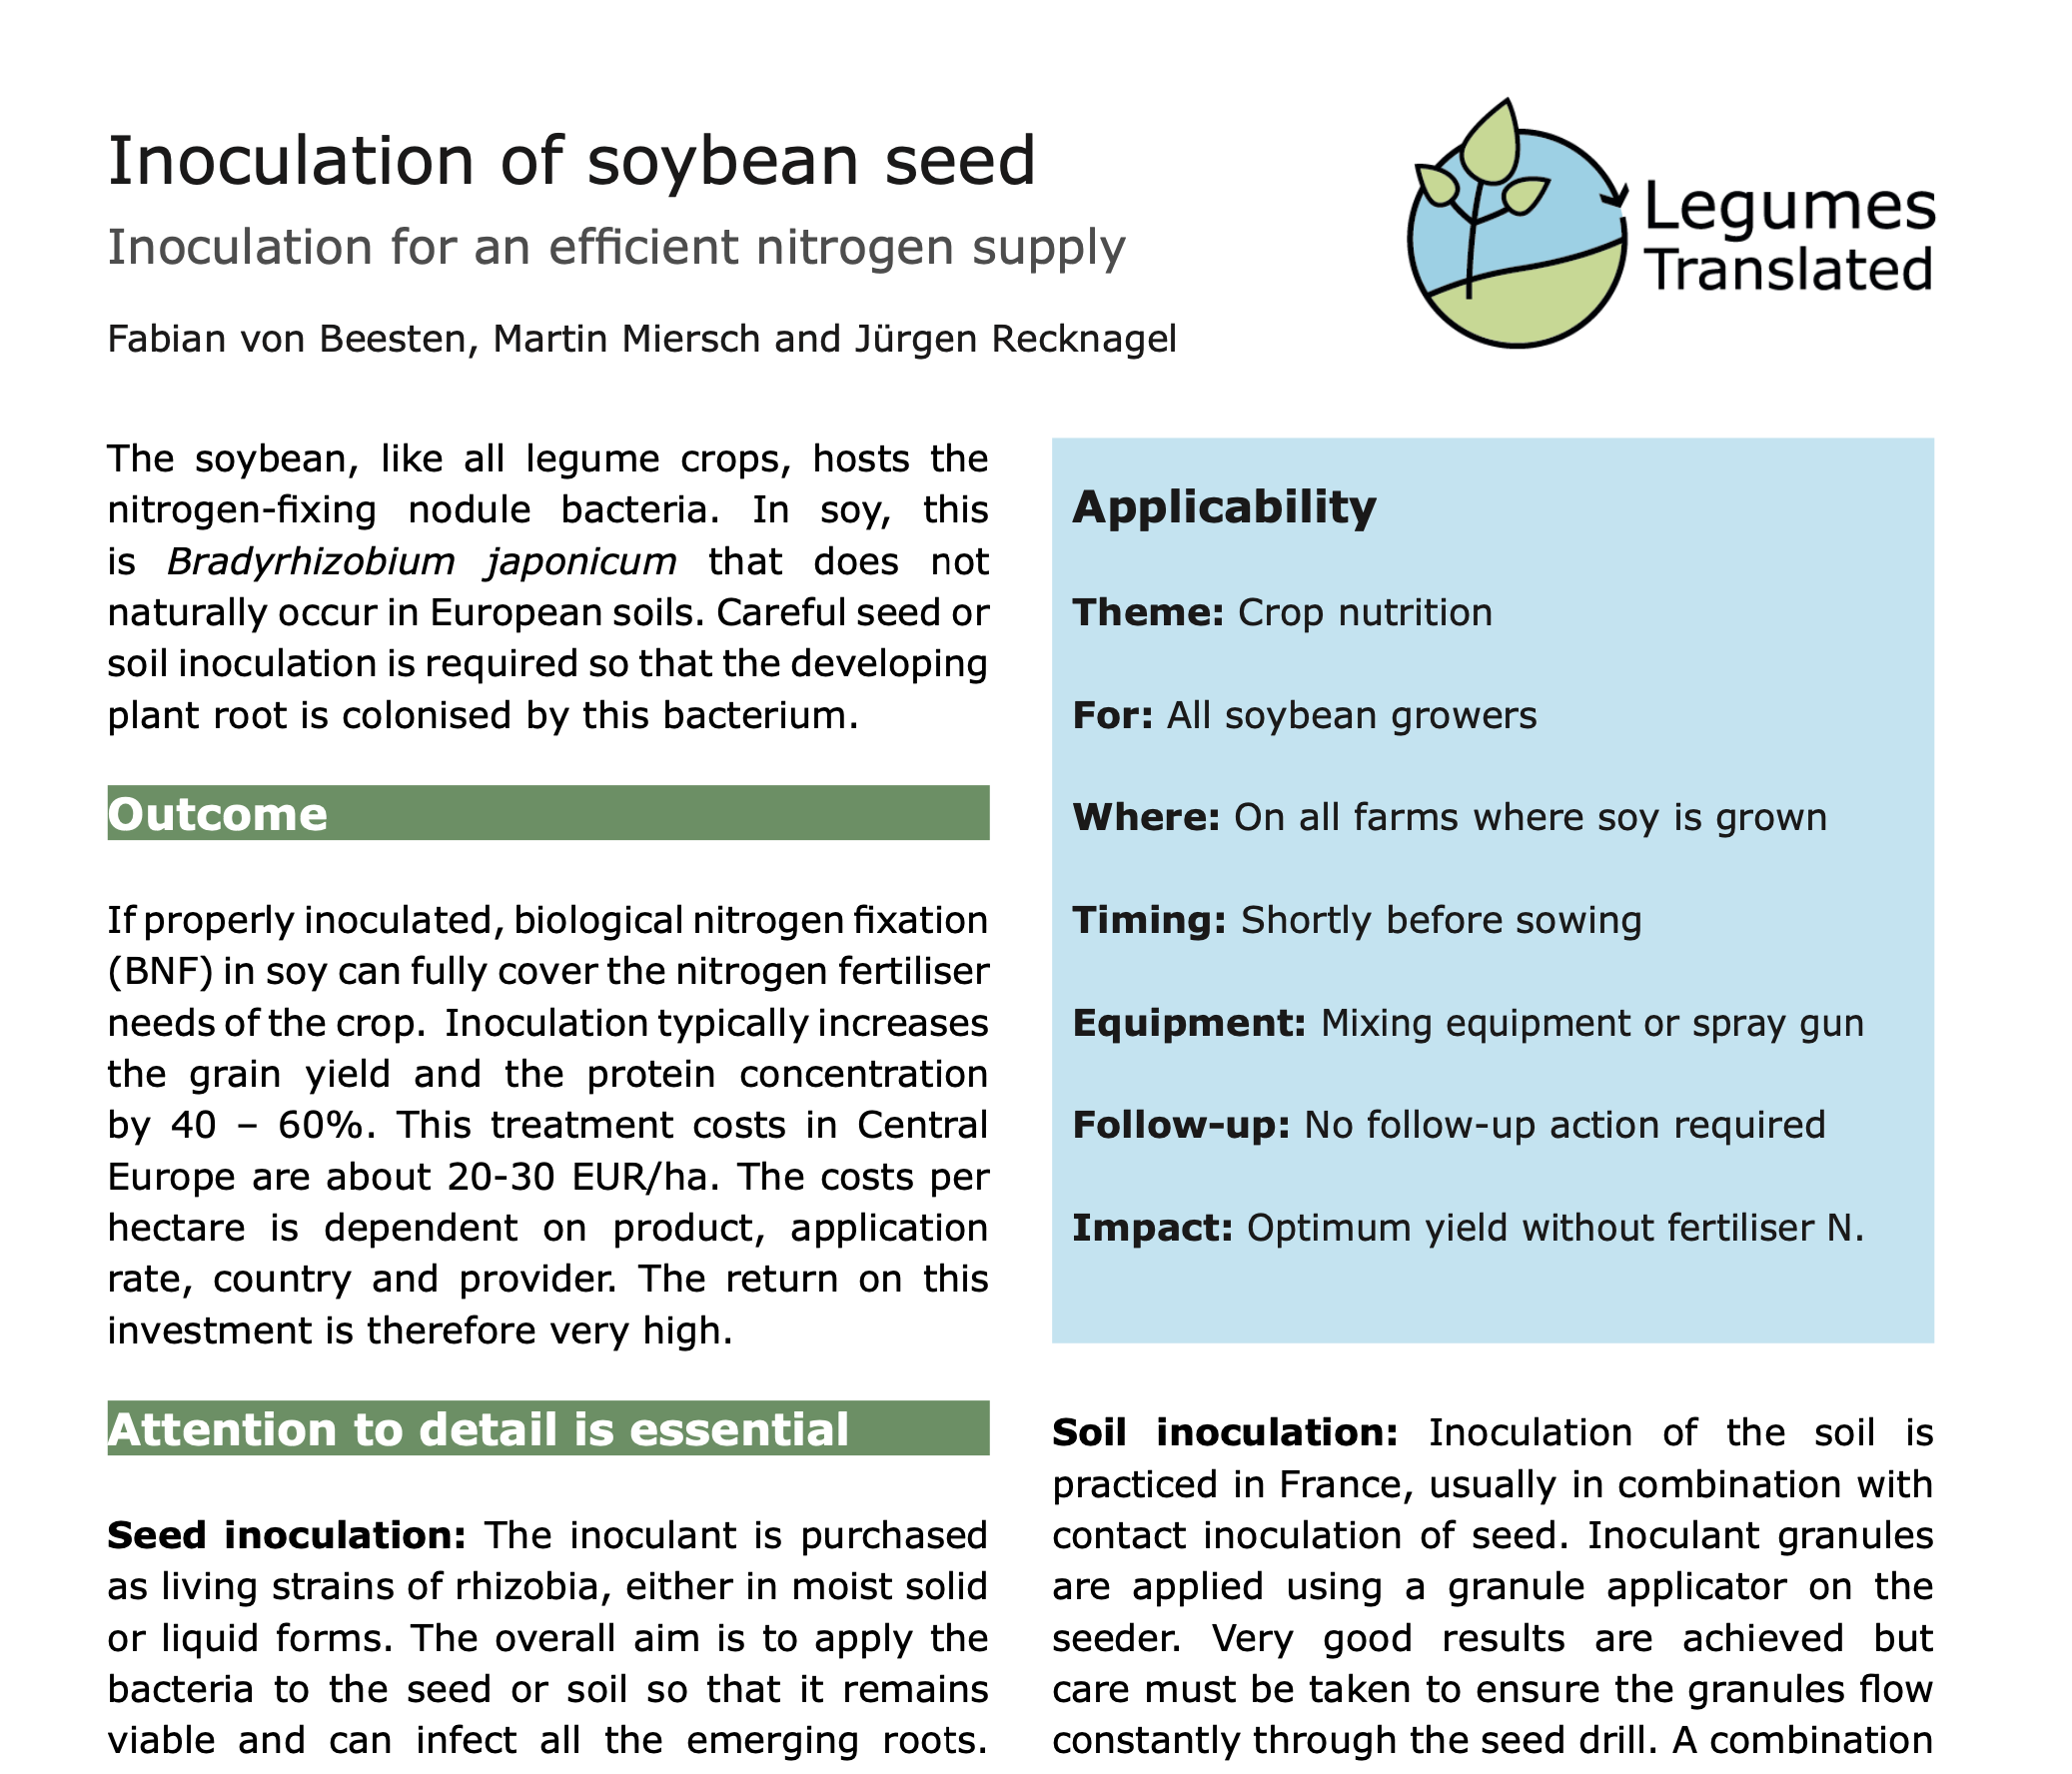 Podning af sojafrø – podning for en effektiv nitrogentilførsel